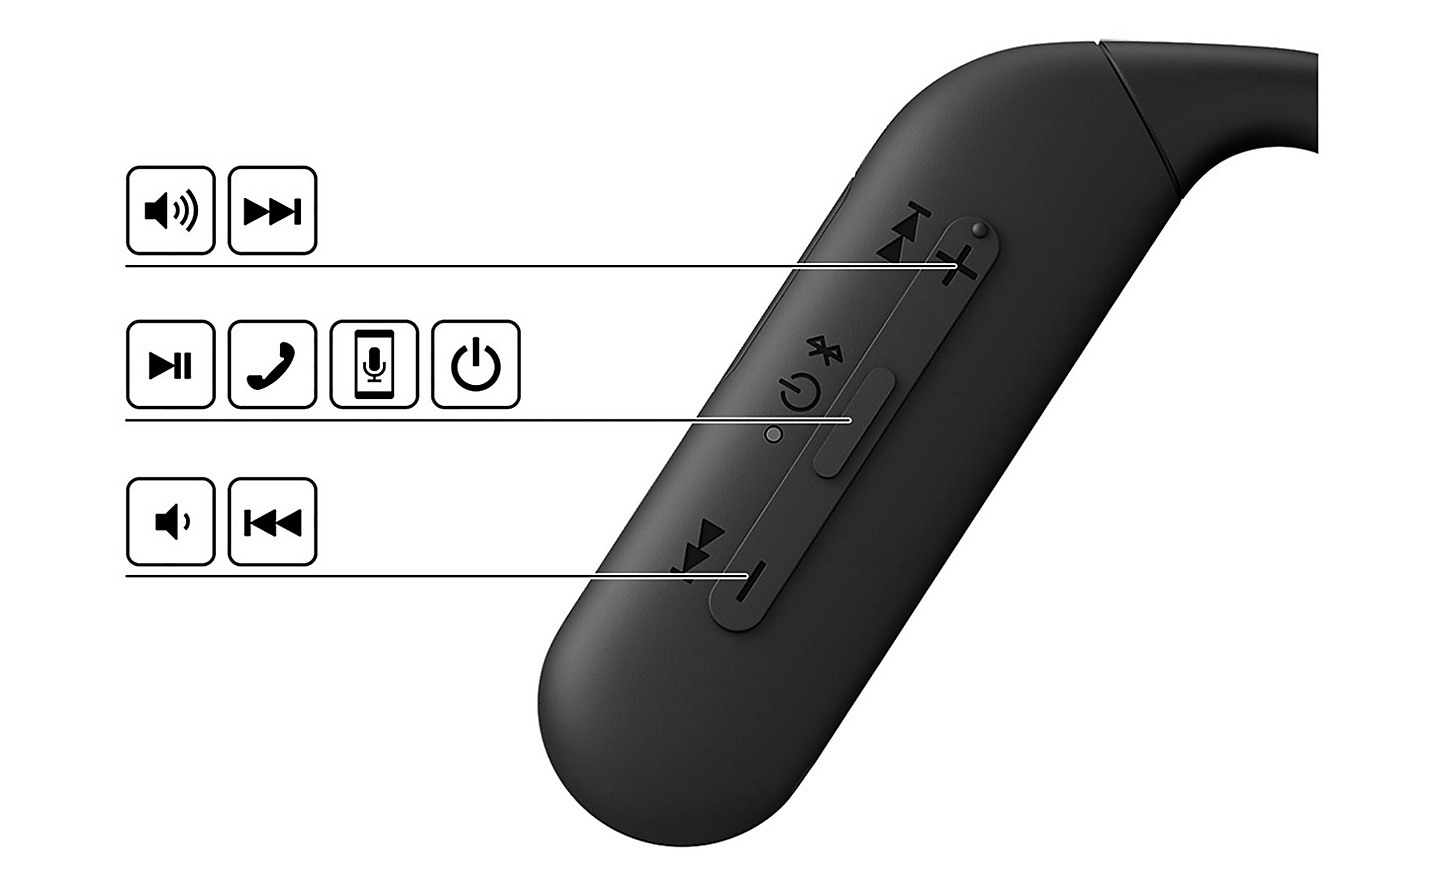 Imagem do painel de controlo dos auscultadores Sony Float Run com vários ícones e linhas apontando para os botões